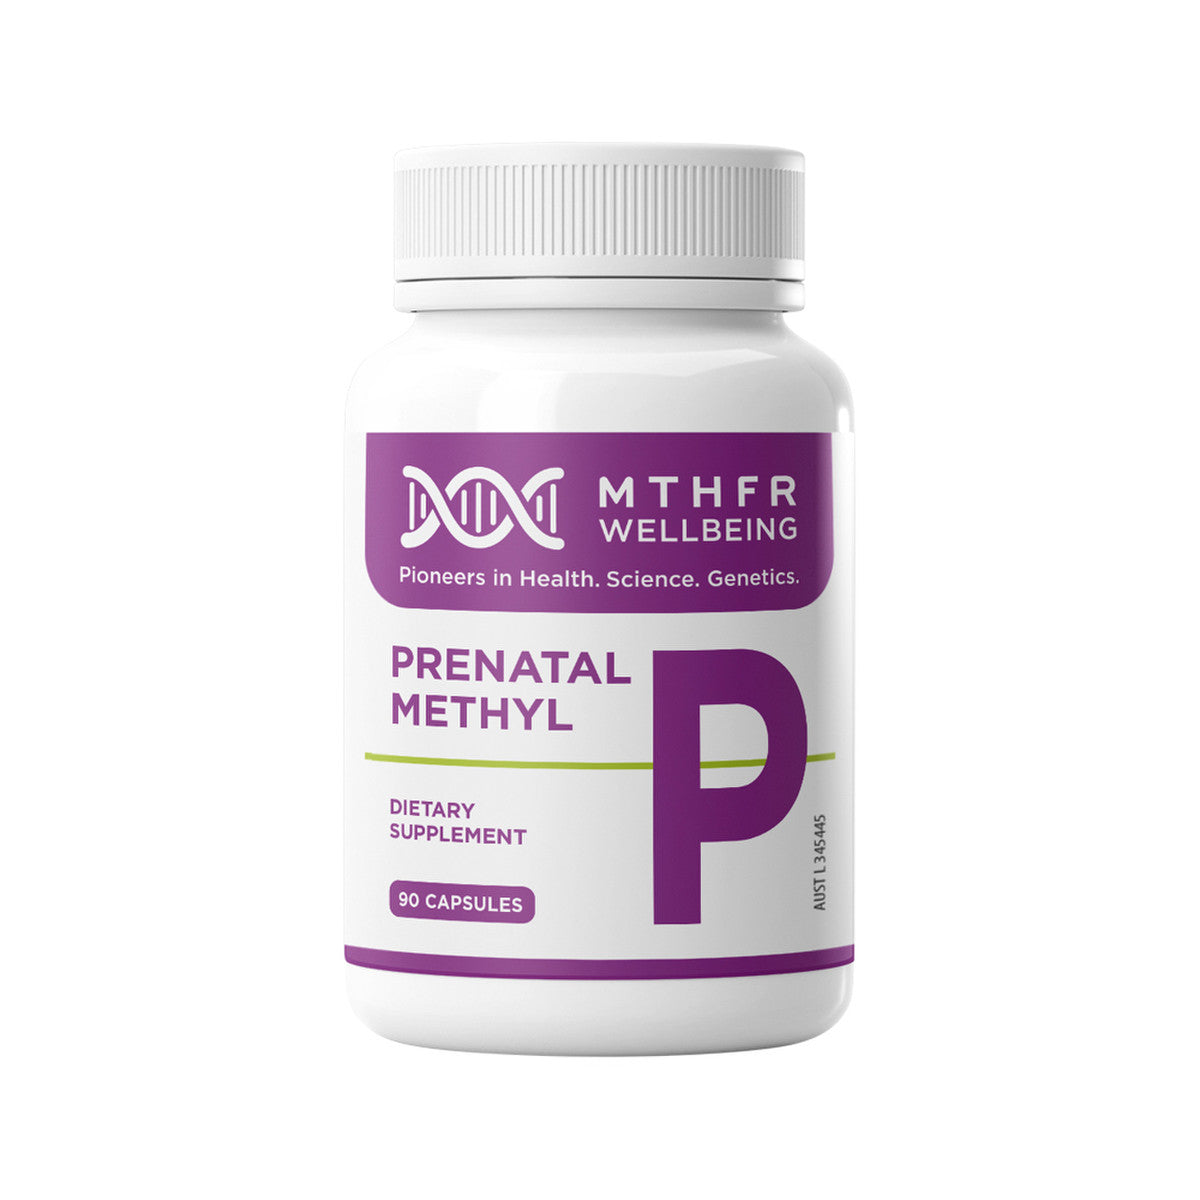 MTHFR Wellbeing - Prenatal Methyl P